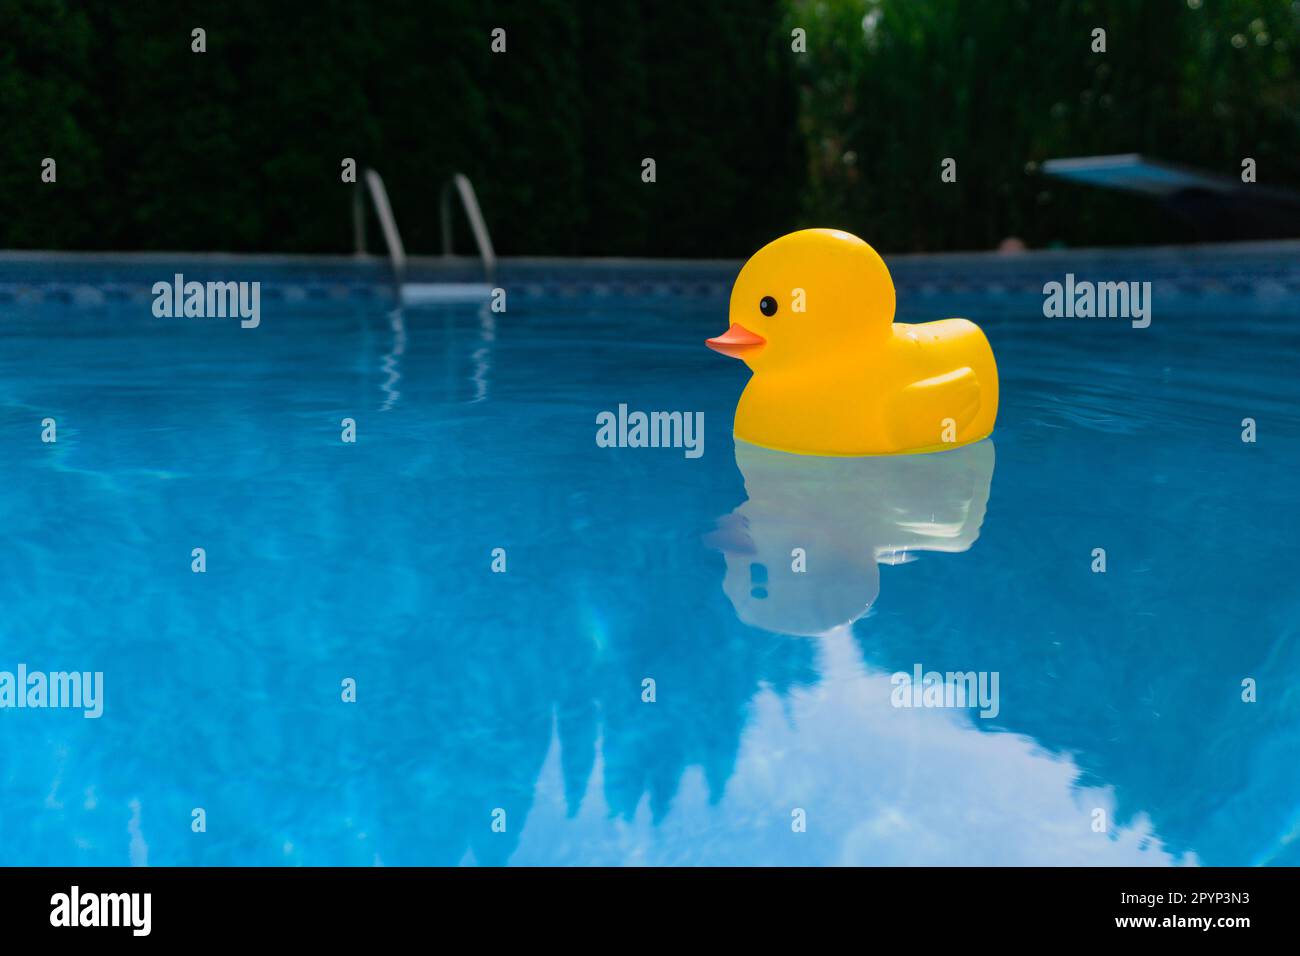 Vue à angle bas d'un canard en caoutchouc jaune flottant dans la piscine extérieure Banque D'Images